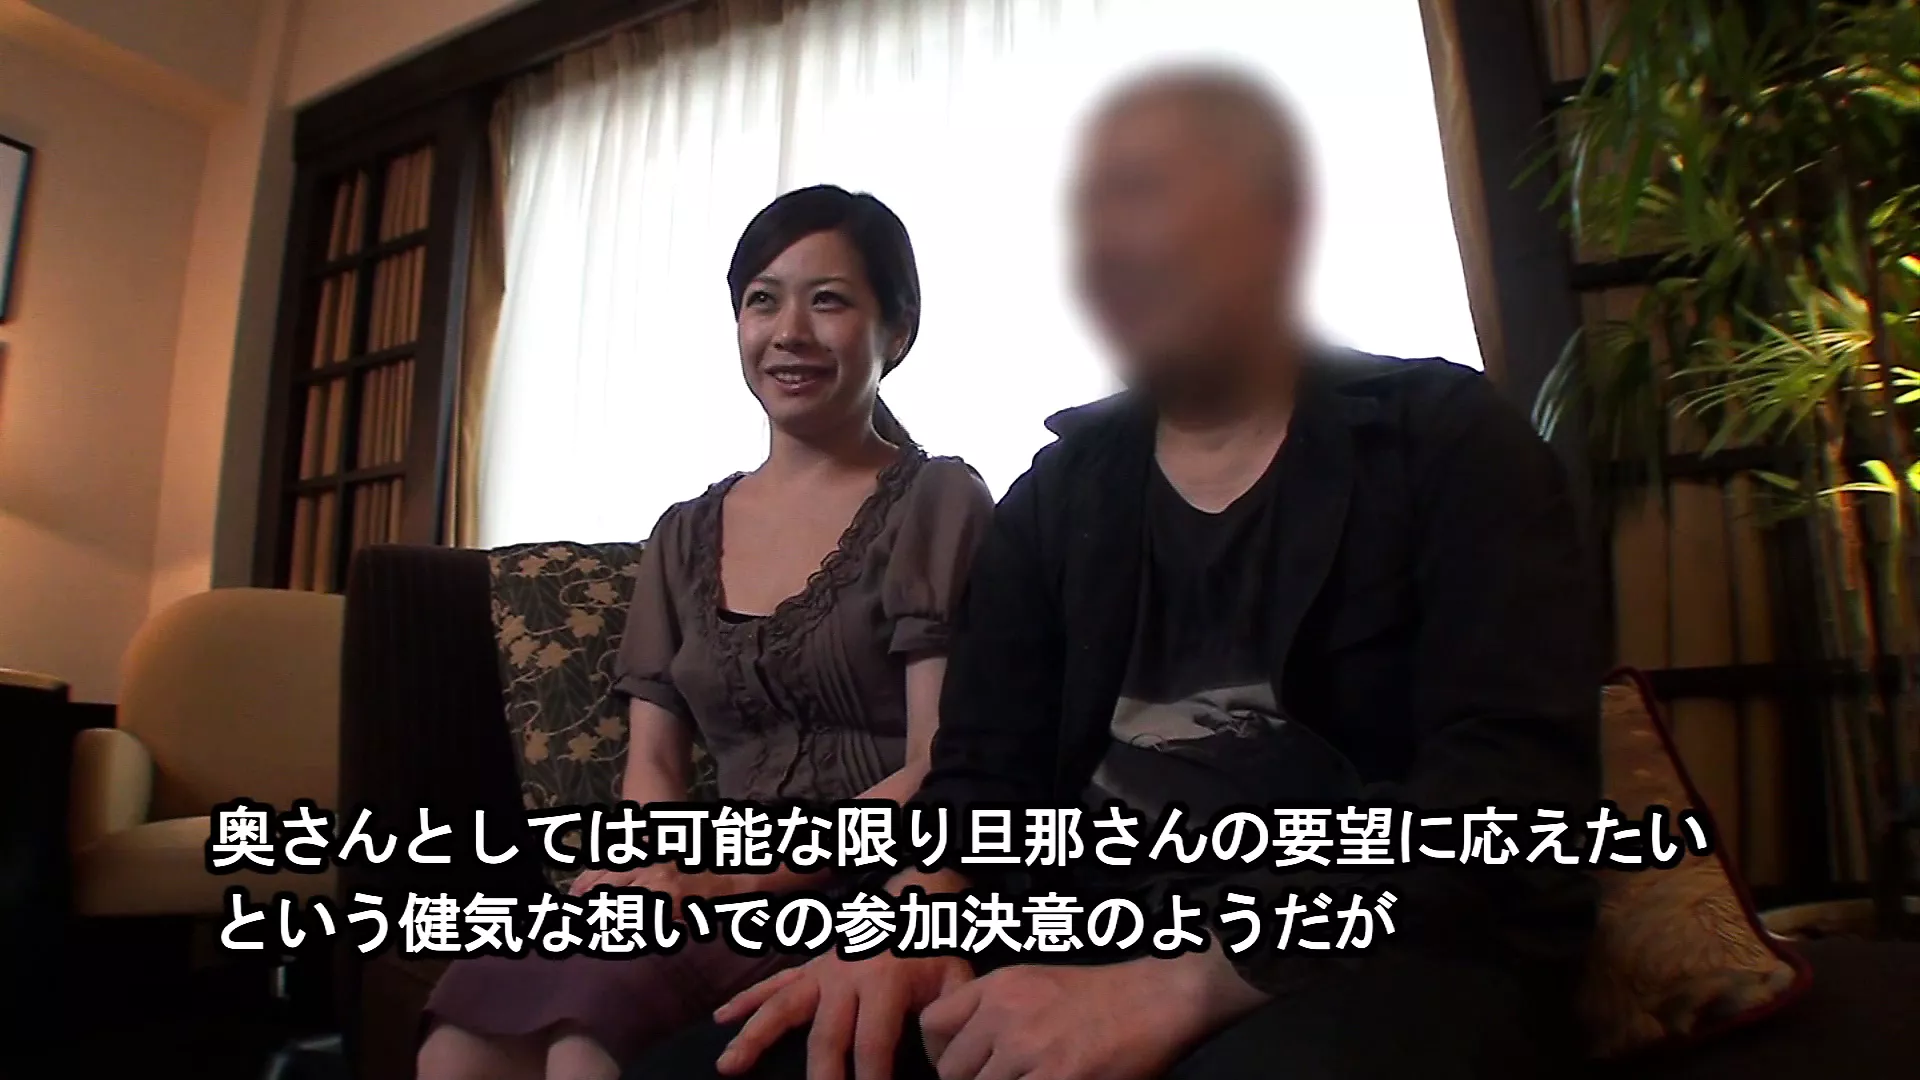 Vídeo japonês amador de sexo do marido compartilhando a esposa com outro homem enquanto ele se senta e assiste xHamster